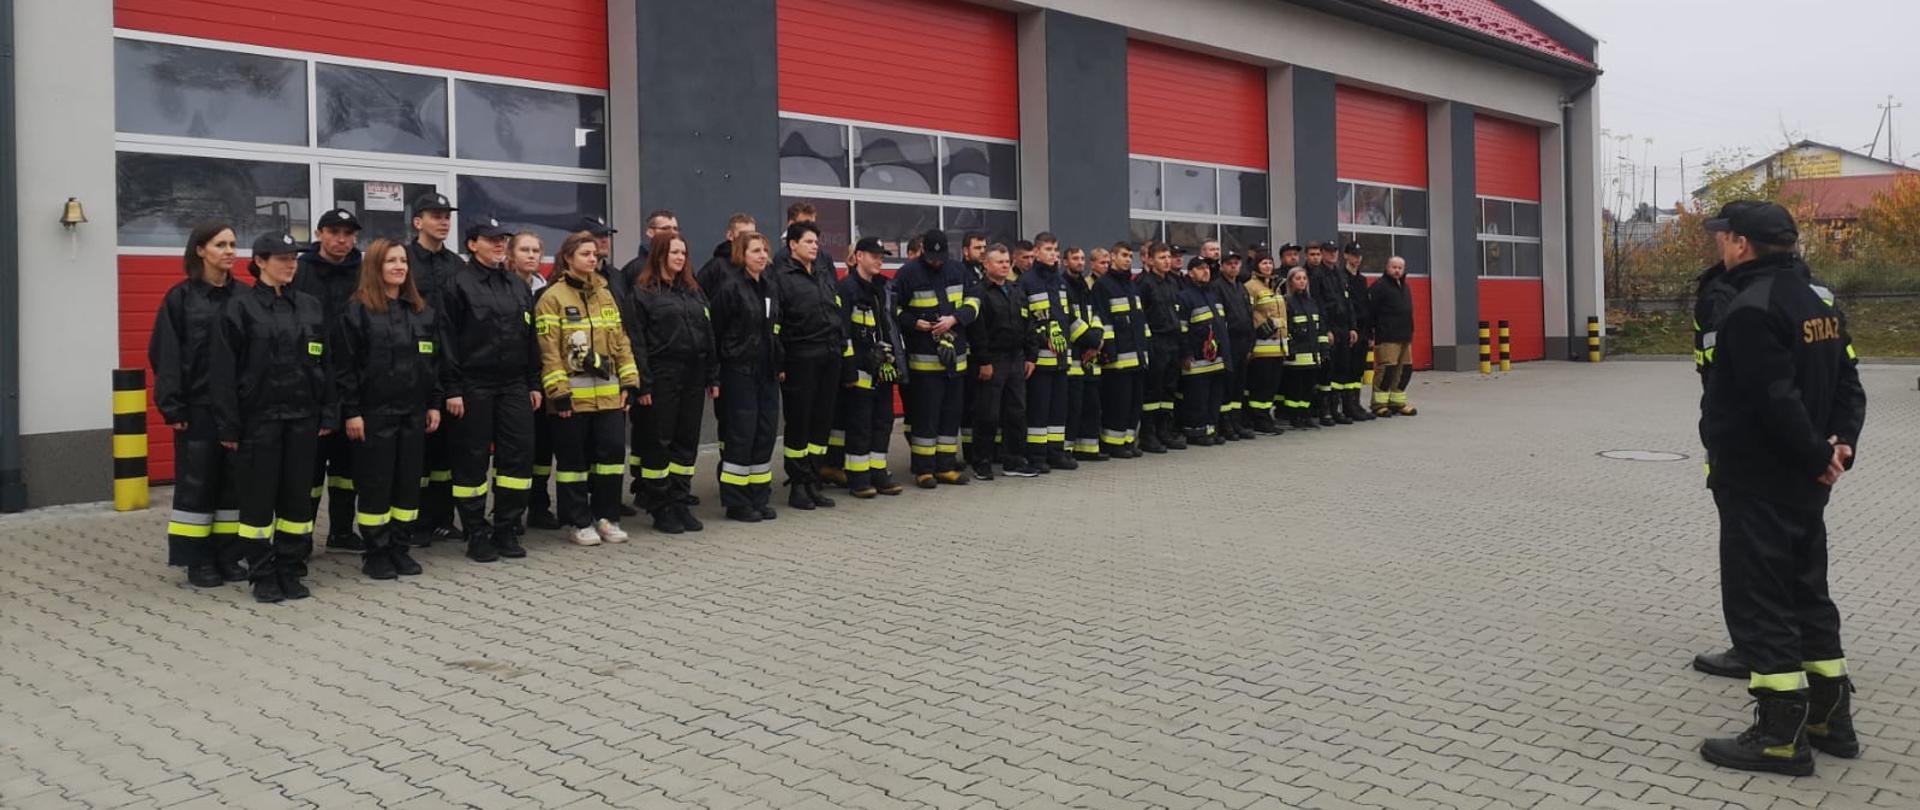 Zdjęcie grupowe przedstawiające wszystkich uczestników kursu podstawowego dla strażaków ochotników ustawionych na tle budynku jednostki w Chmielniku.